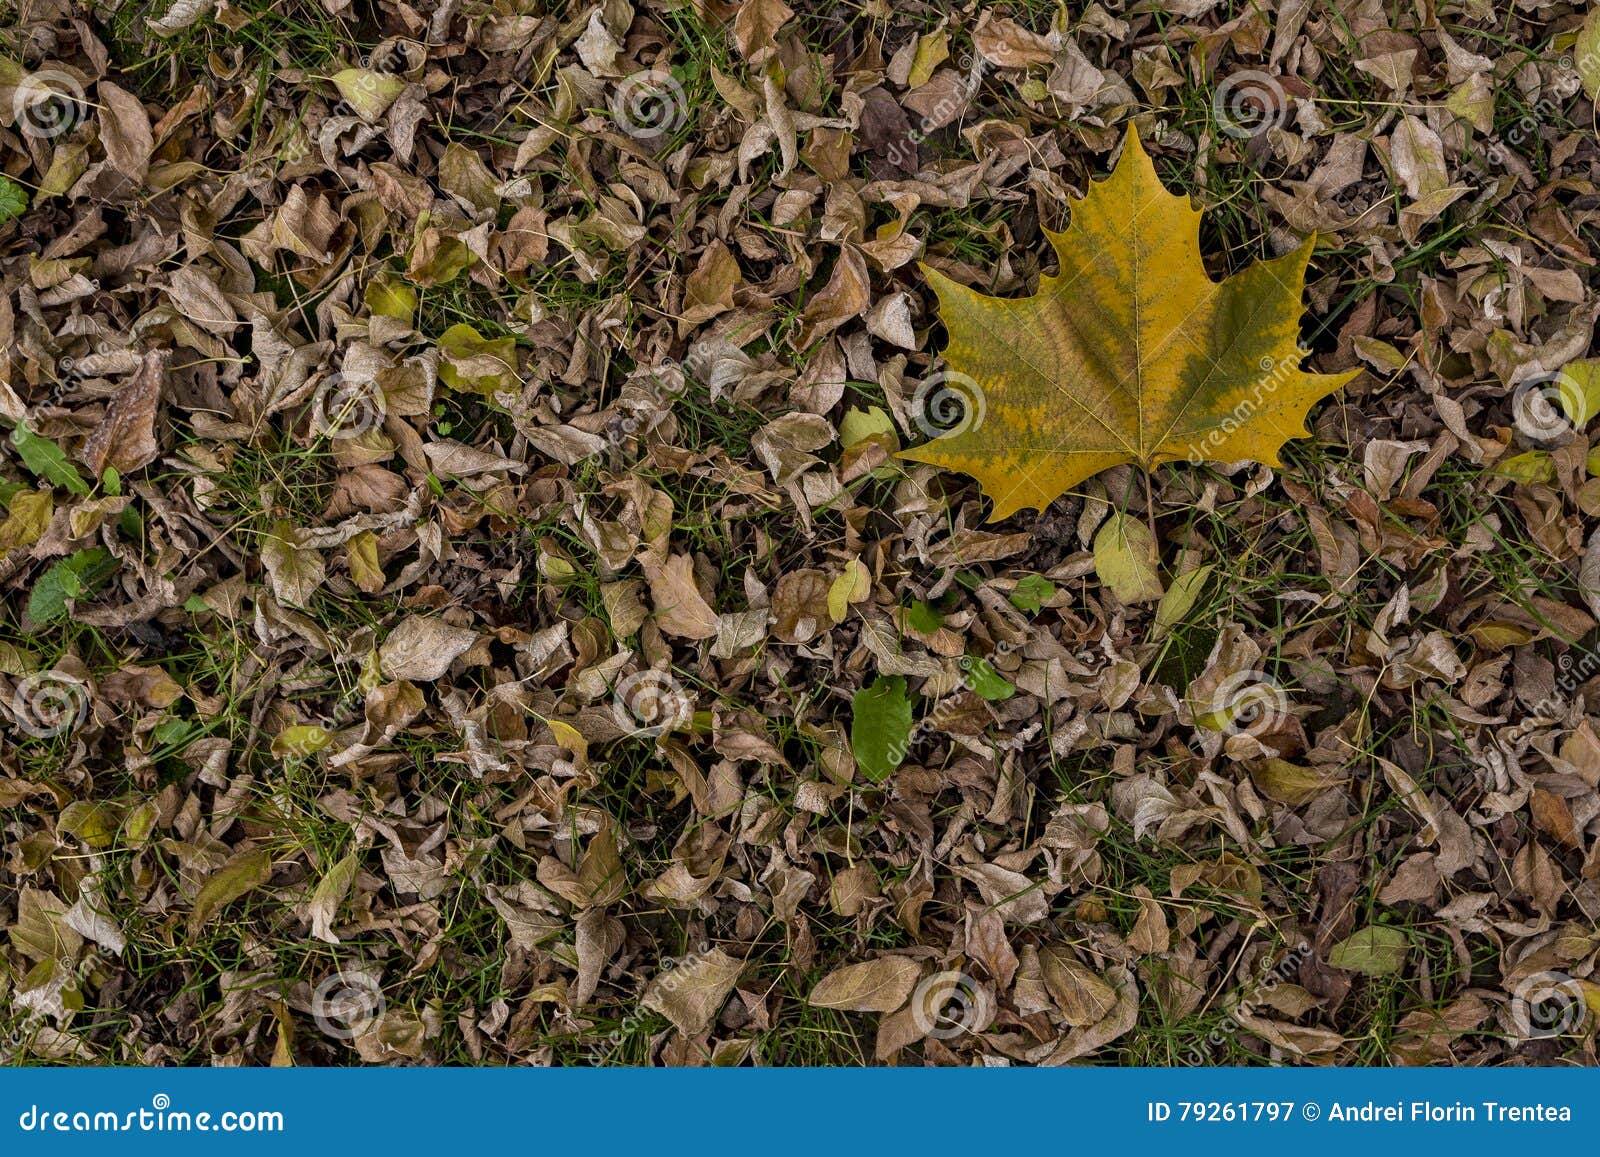 platanus leaf on dry leaf bed